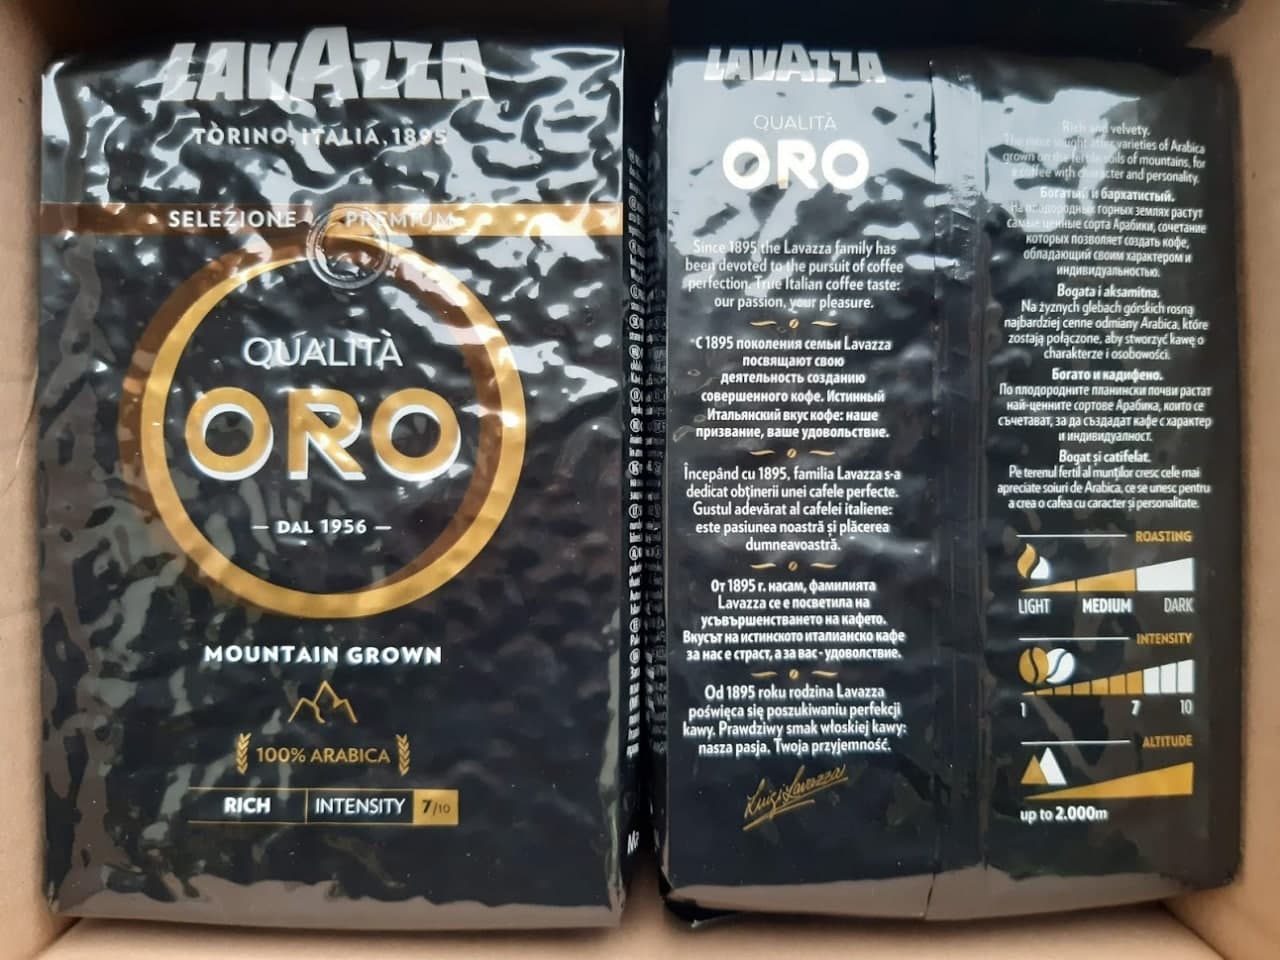 Kohvioad "LAVAZZA" Qualita Oro Mountain Grown